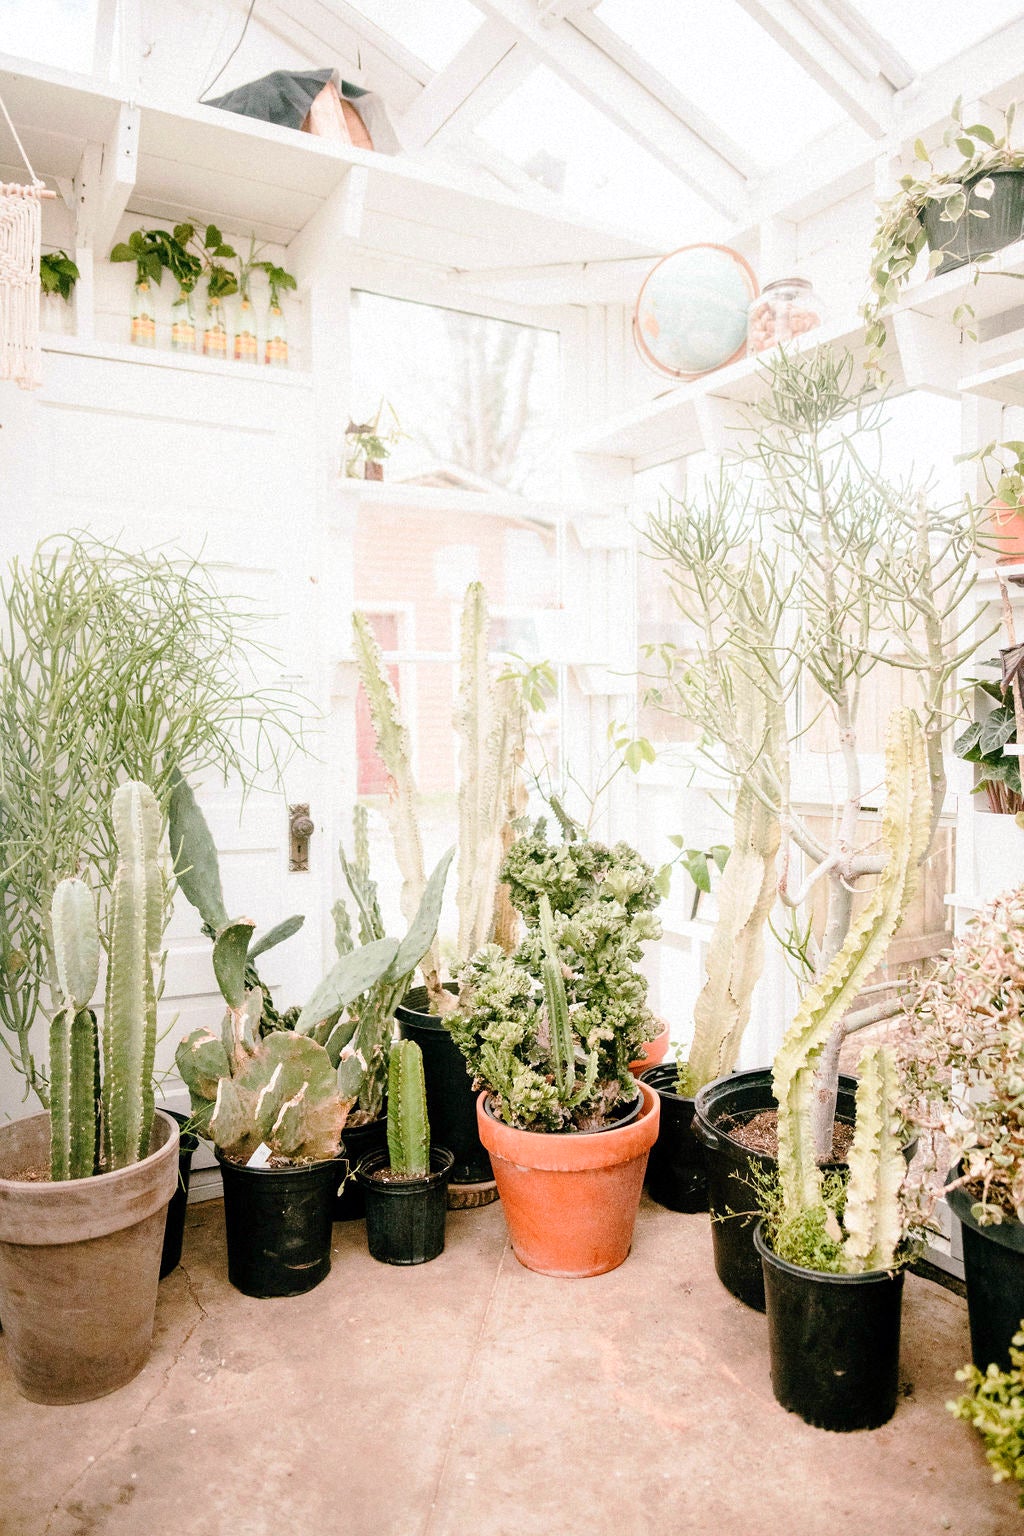 Corner full of plants